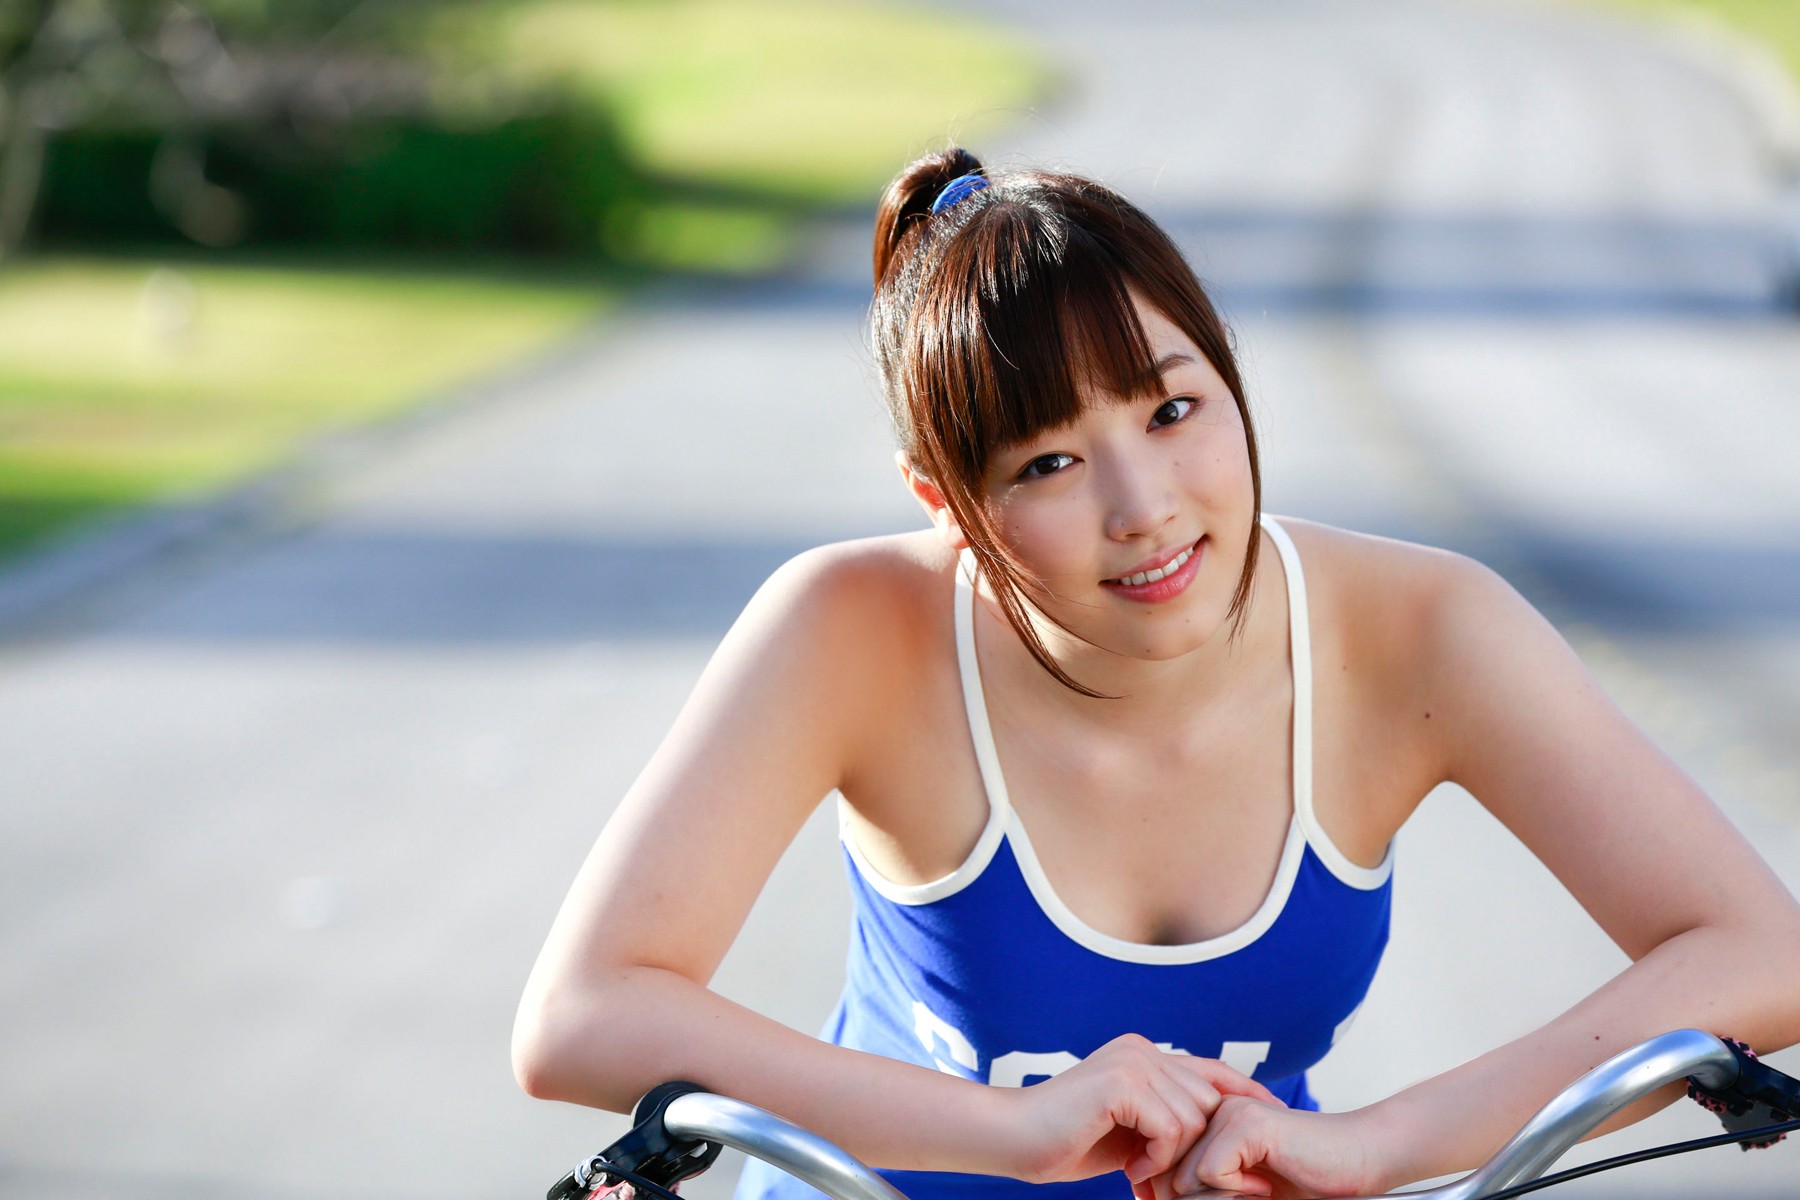 Mizuki Fukumura Asian Morning Musume Women Auburn Hair Looking At Viewer Camisole Brown Eyes Smiling 1800x1200